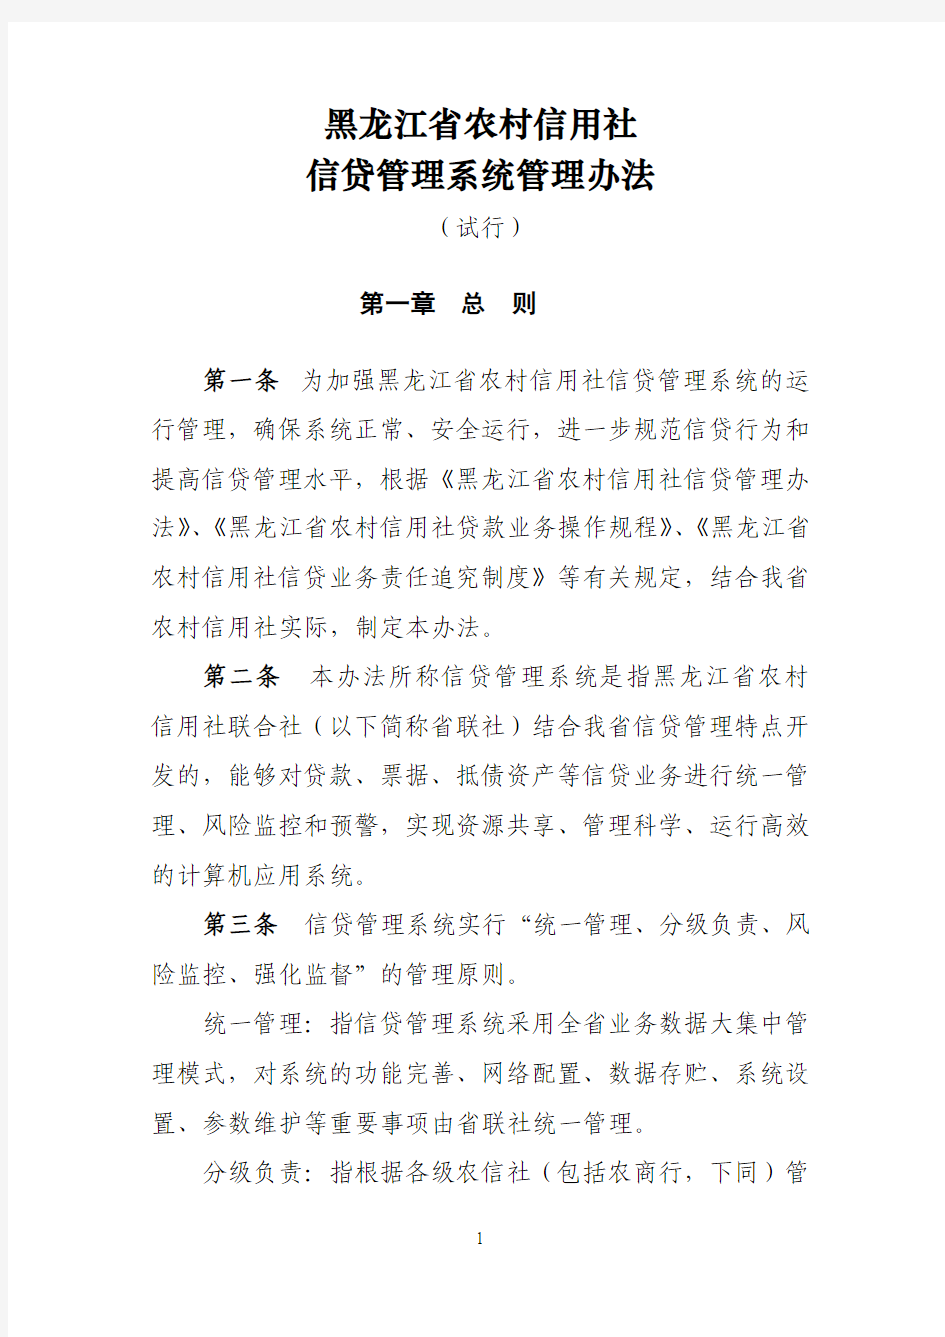 黑龙江农村信用社信贷管理系统管理办法(试行)